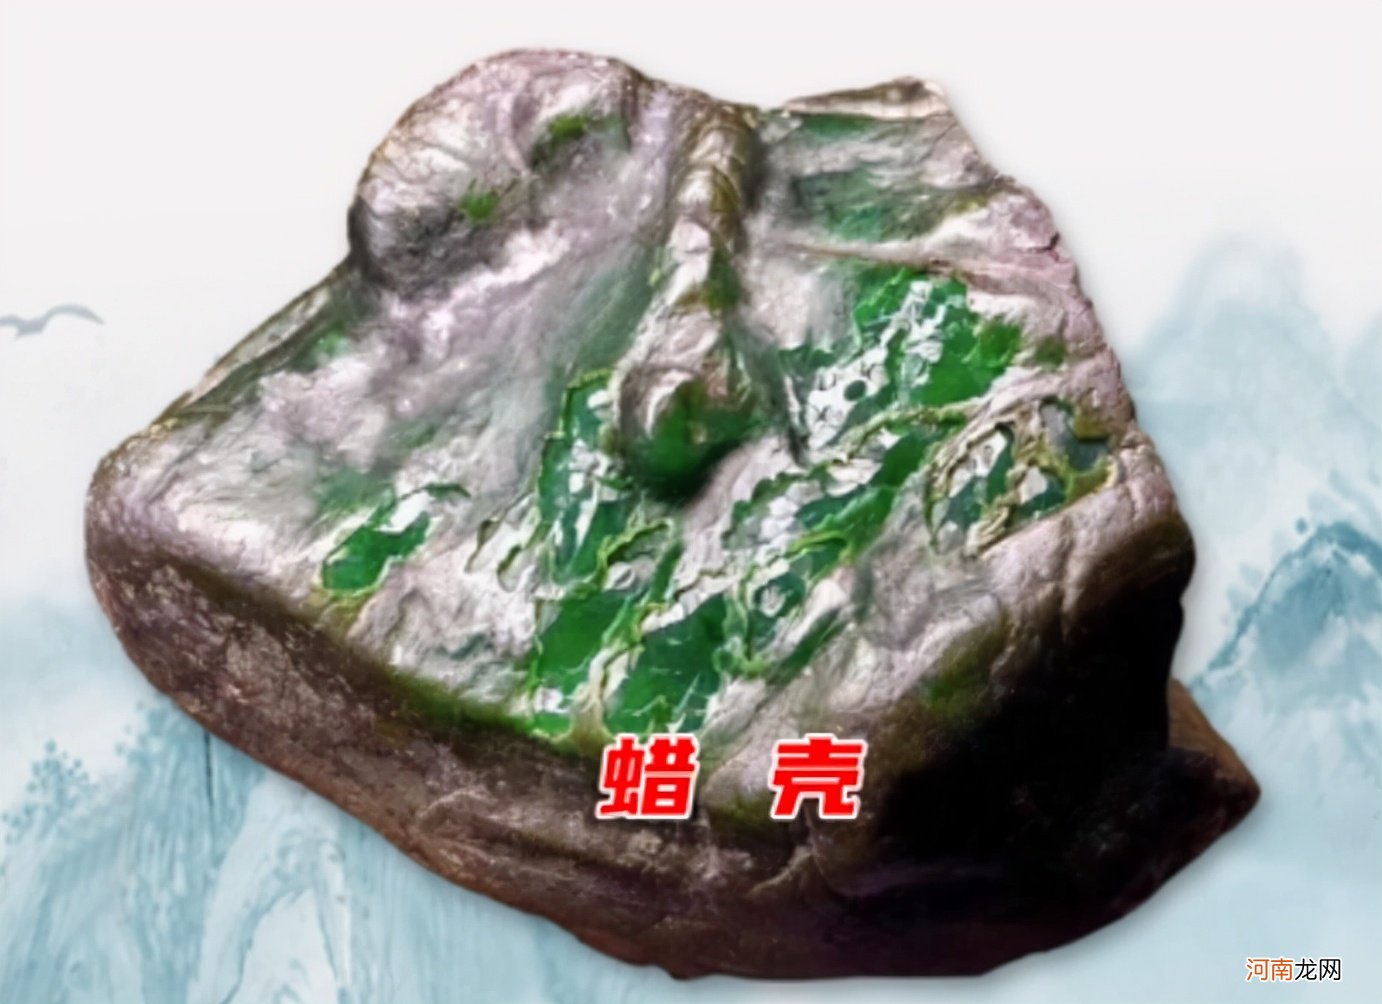 翡翠原石八大场口皮壳特征 缅甸翡翠的产出特征